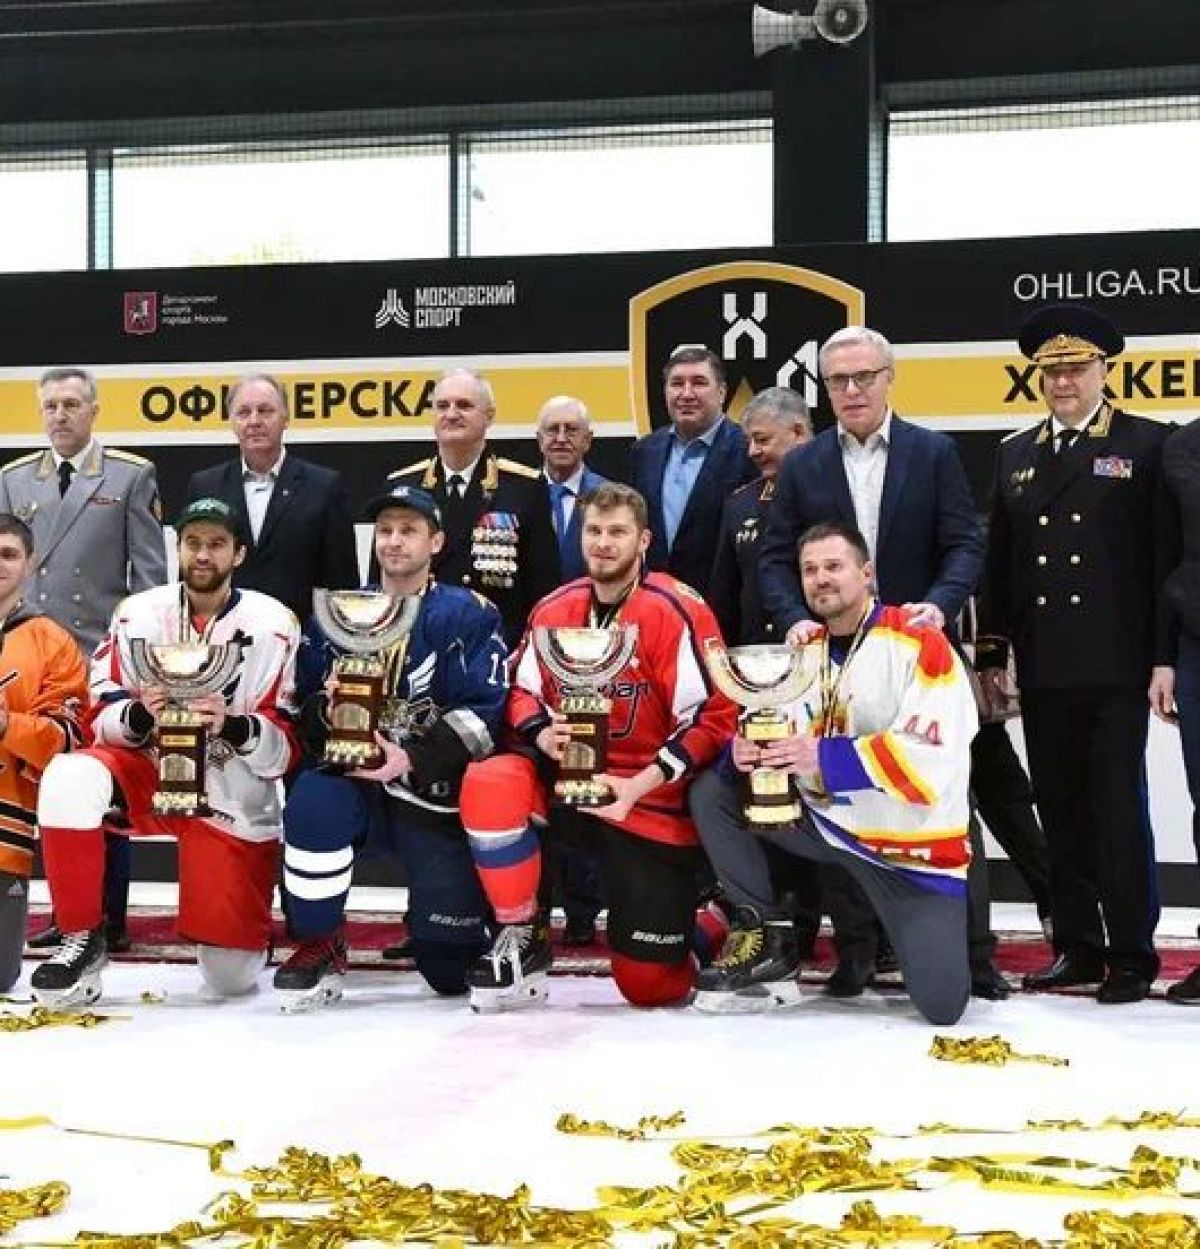 Определены лучшие игроки четвертого сезона Офицерской хоккейной лиги в Москве